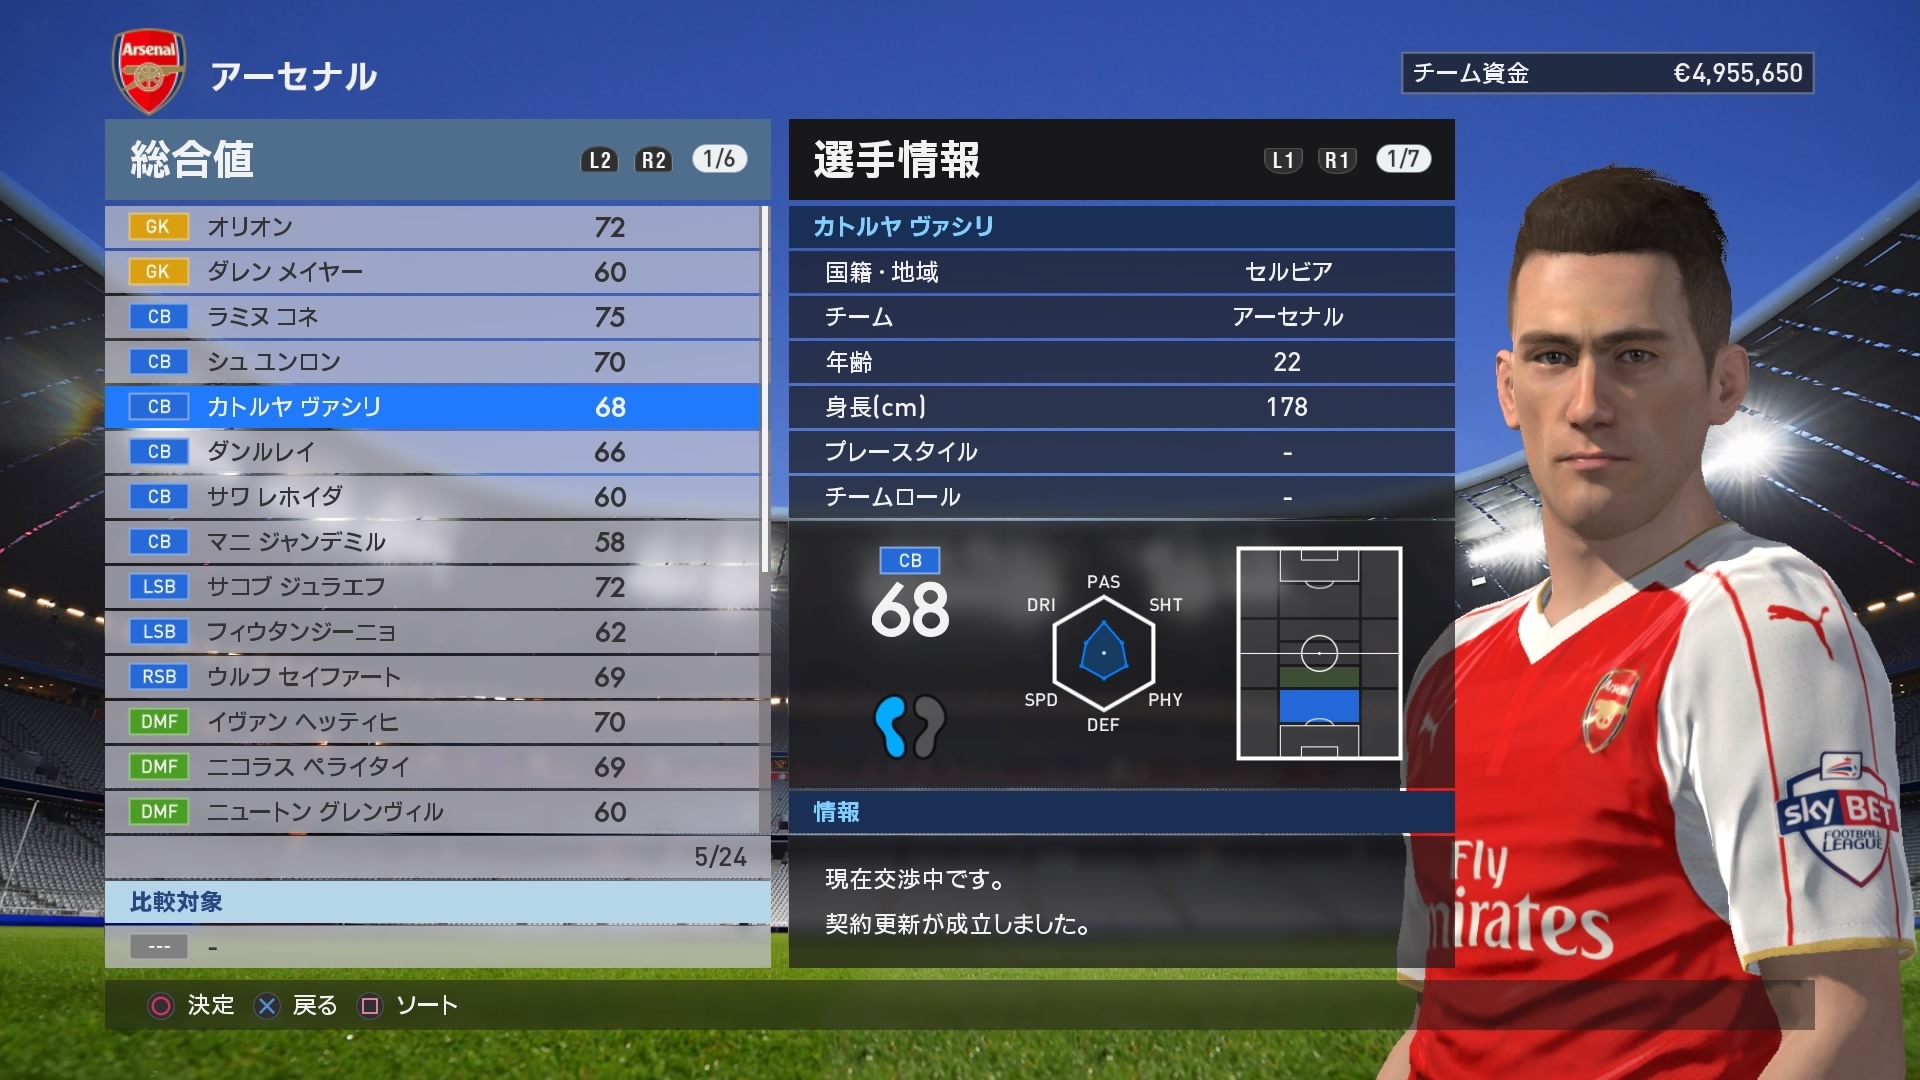 ウイニングイレブン Pro Evolution Soccer Japaneseclass Jp